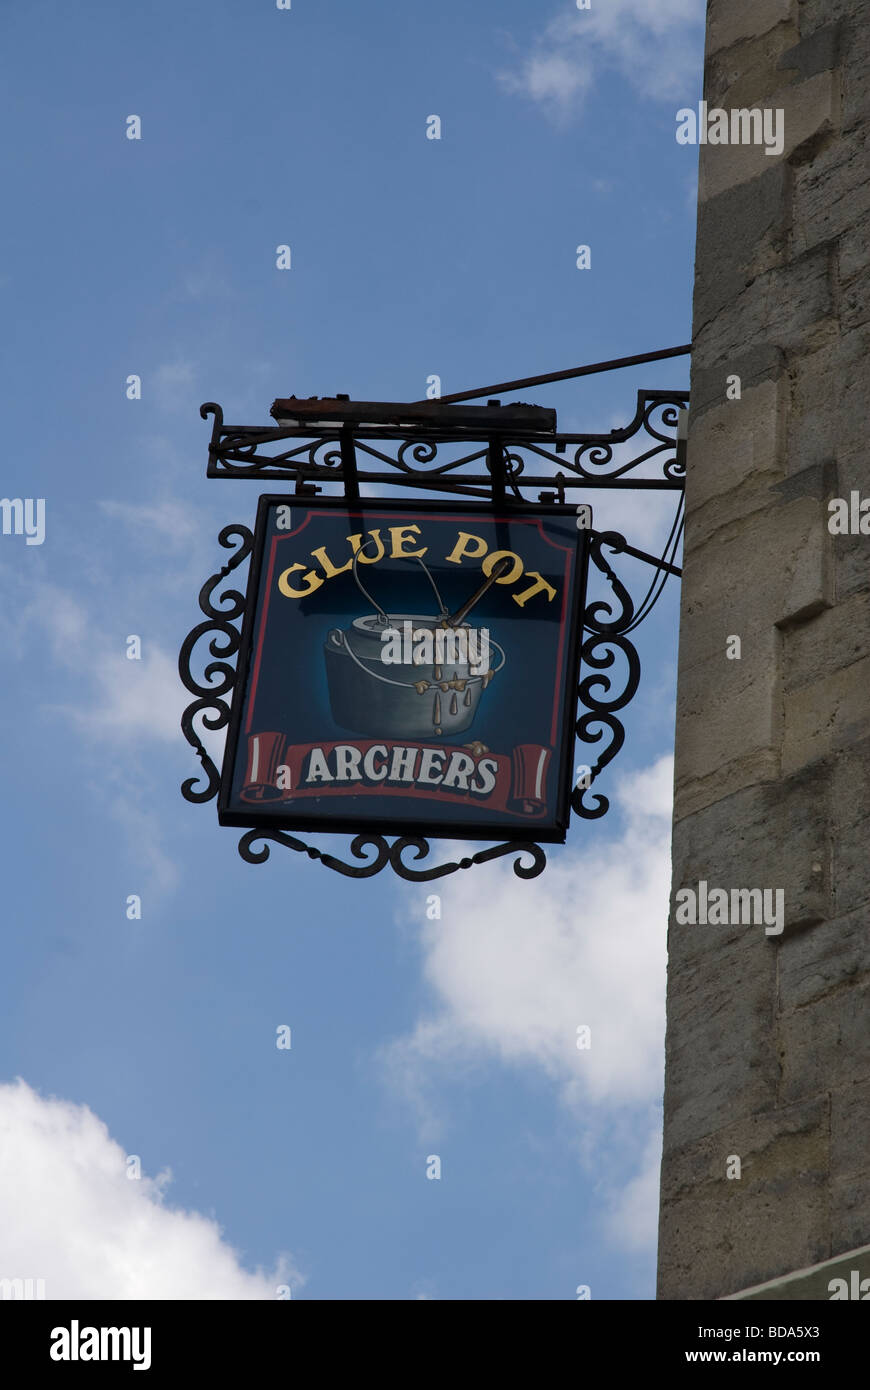 Glue Pot Public house, pub sign Swindon Wiltshire UK Stock Photo